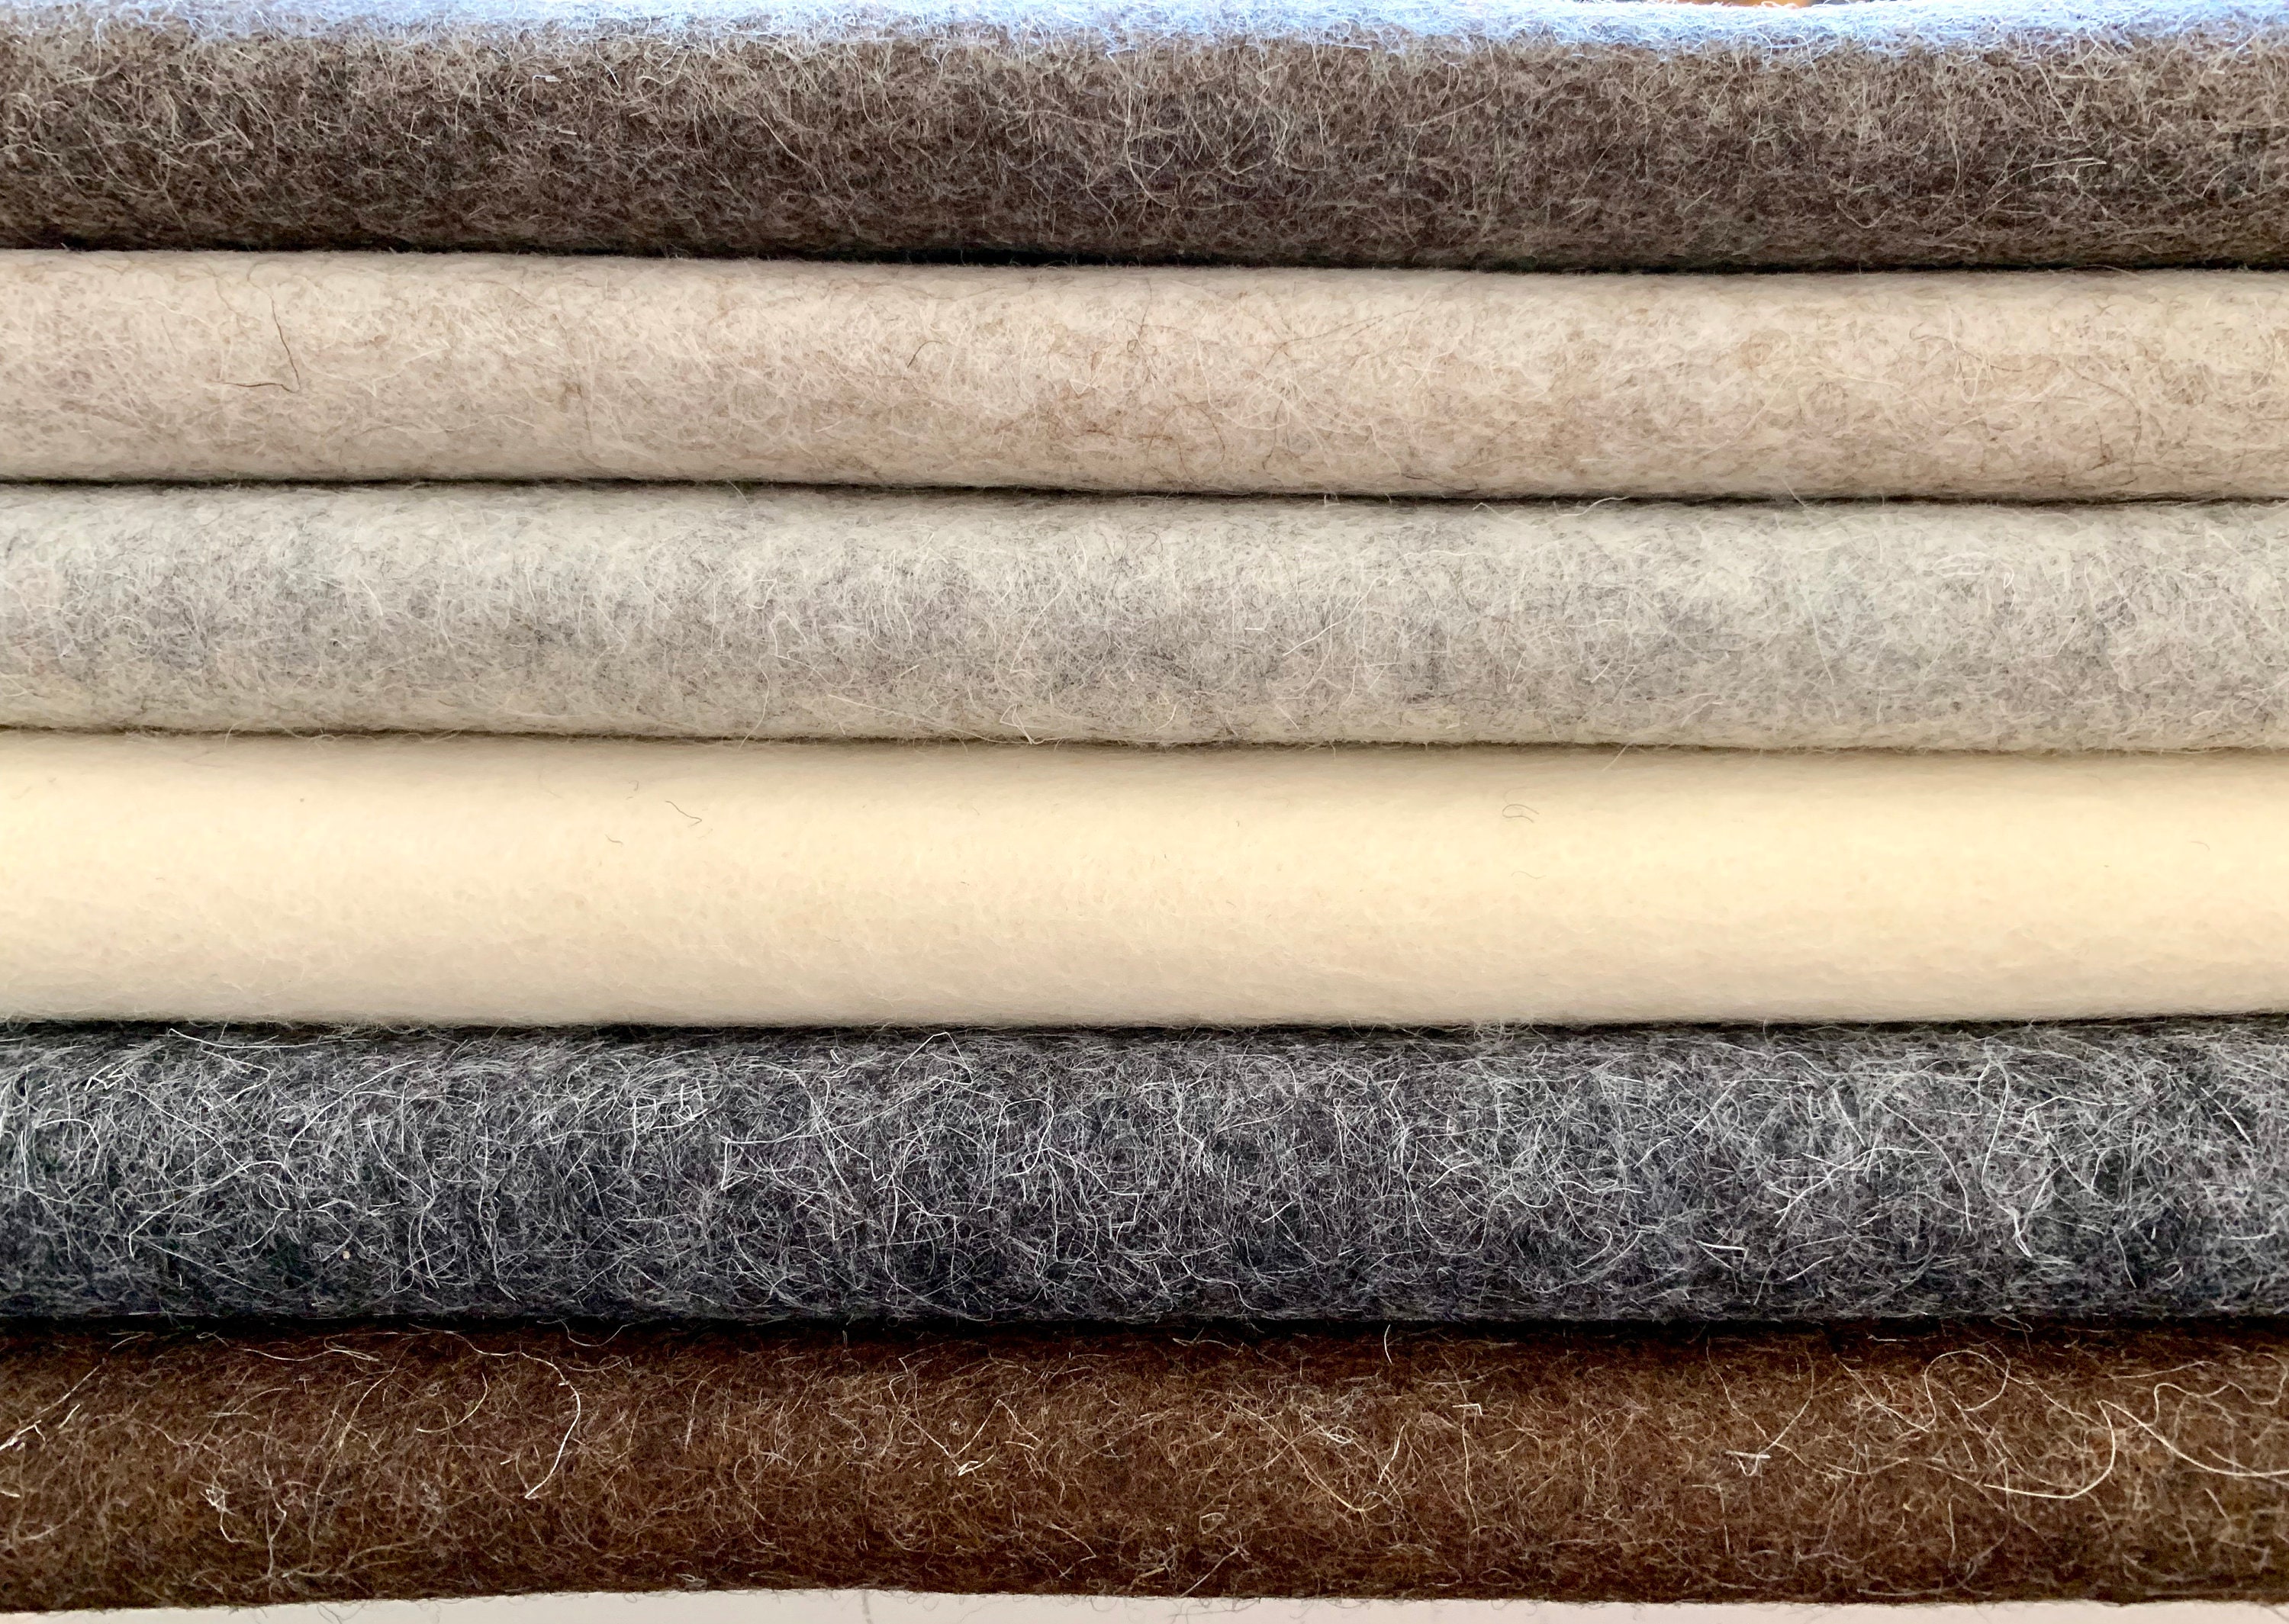 Wool Felt Sheets 12x18 Top Quality PICK ANY COLORS 63 7 New Colours Wool  Felt Blend Wool Felt Squares Eedle Felting Craft Felt 